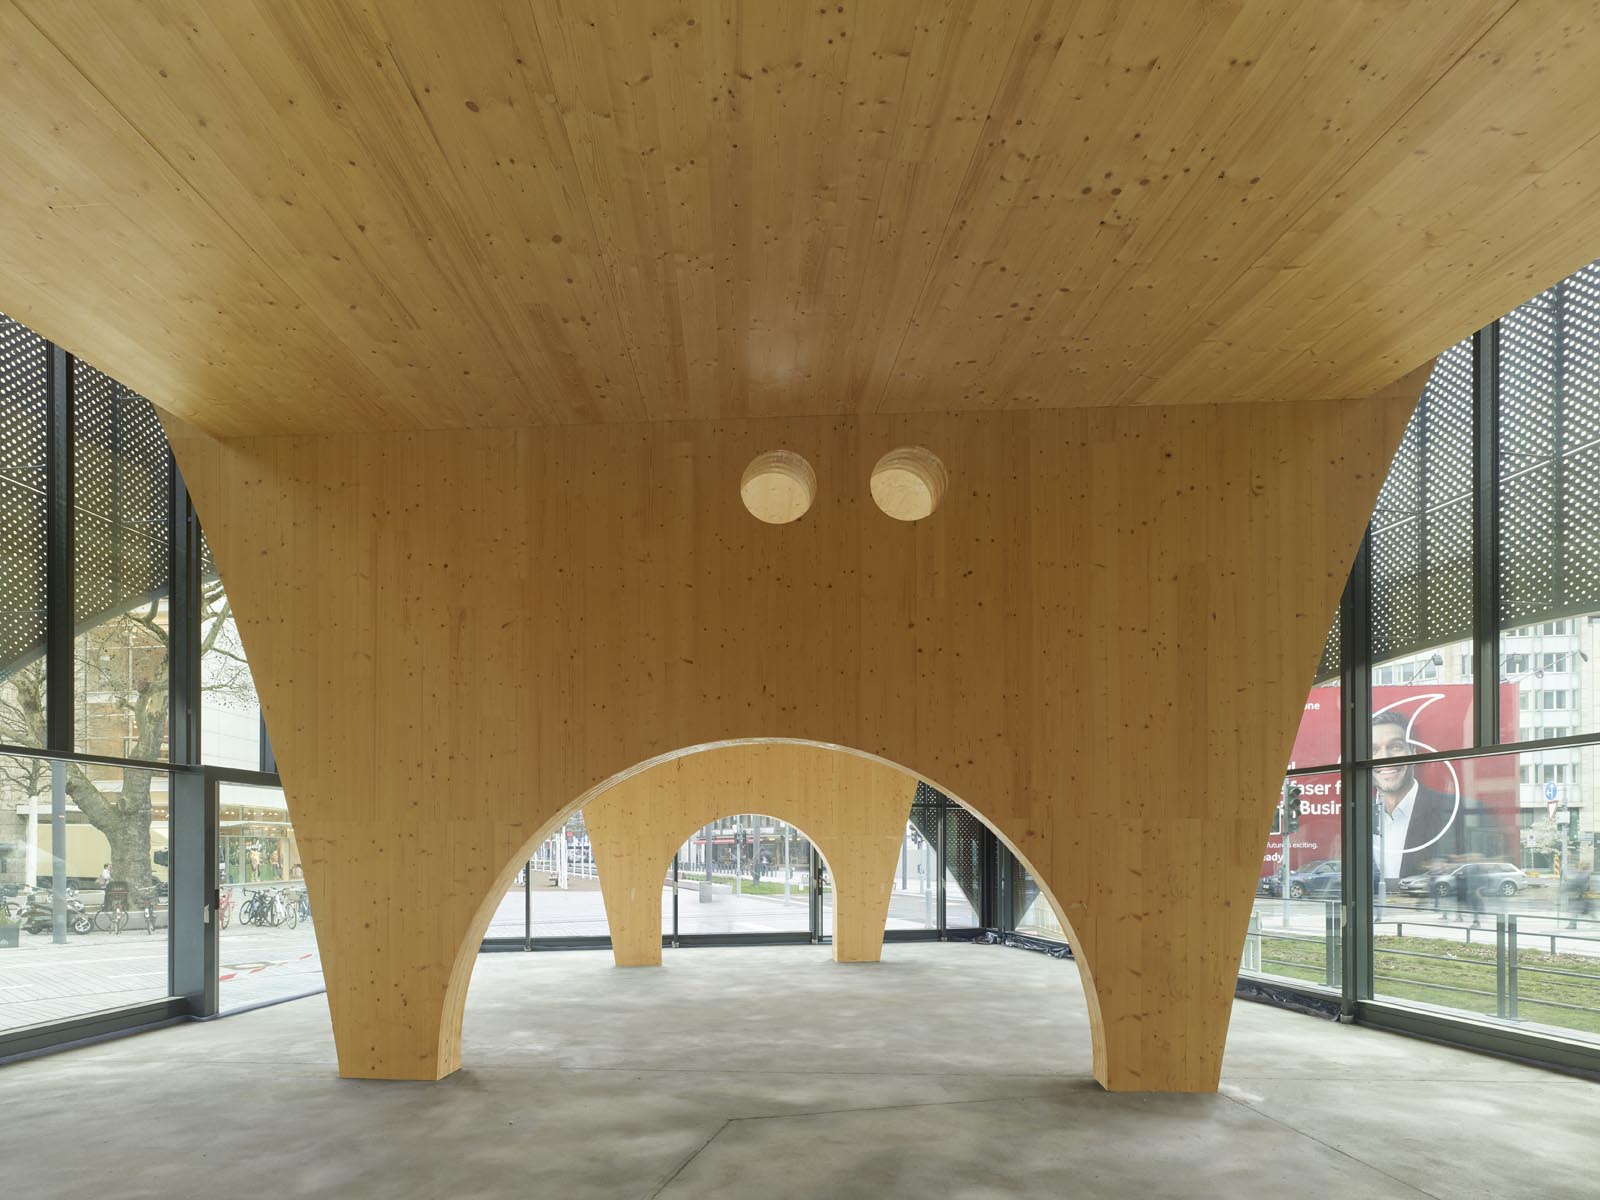 Pavillon Martin-Luther-Platz / Bildquelle: Roland Halbe